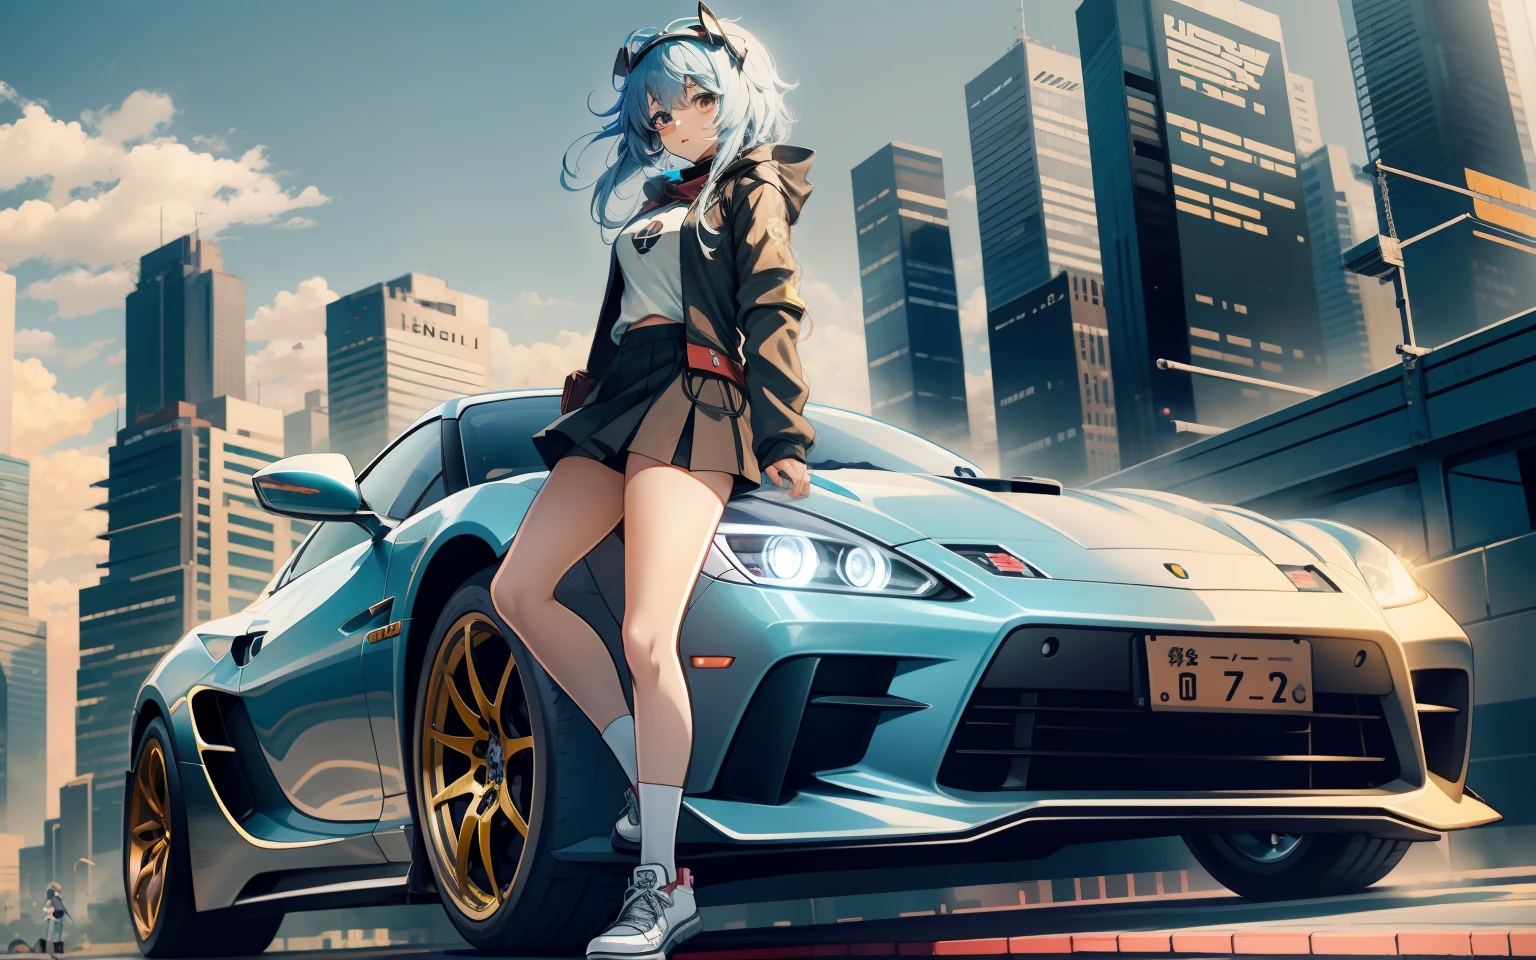  Anime, Super voiture derrière une fille